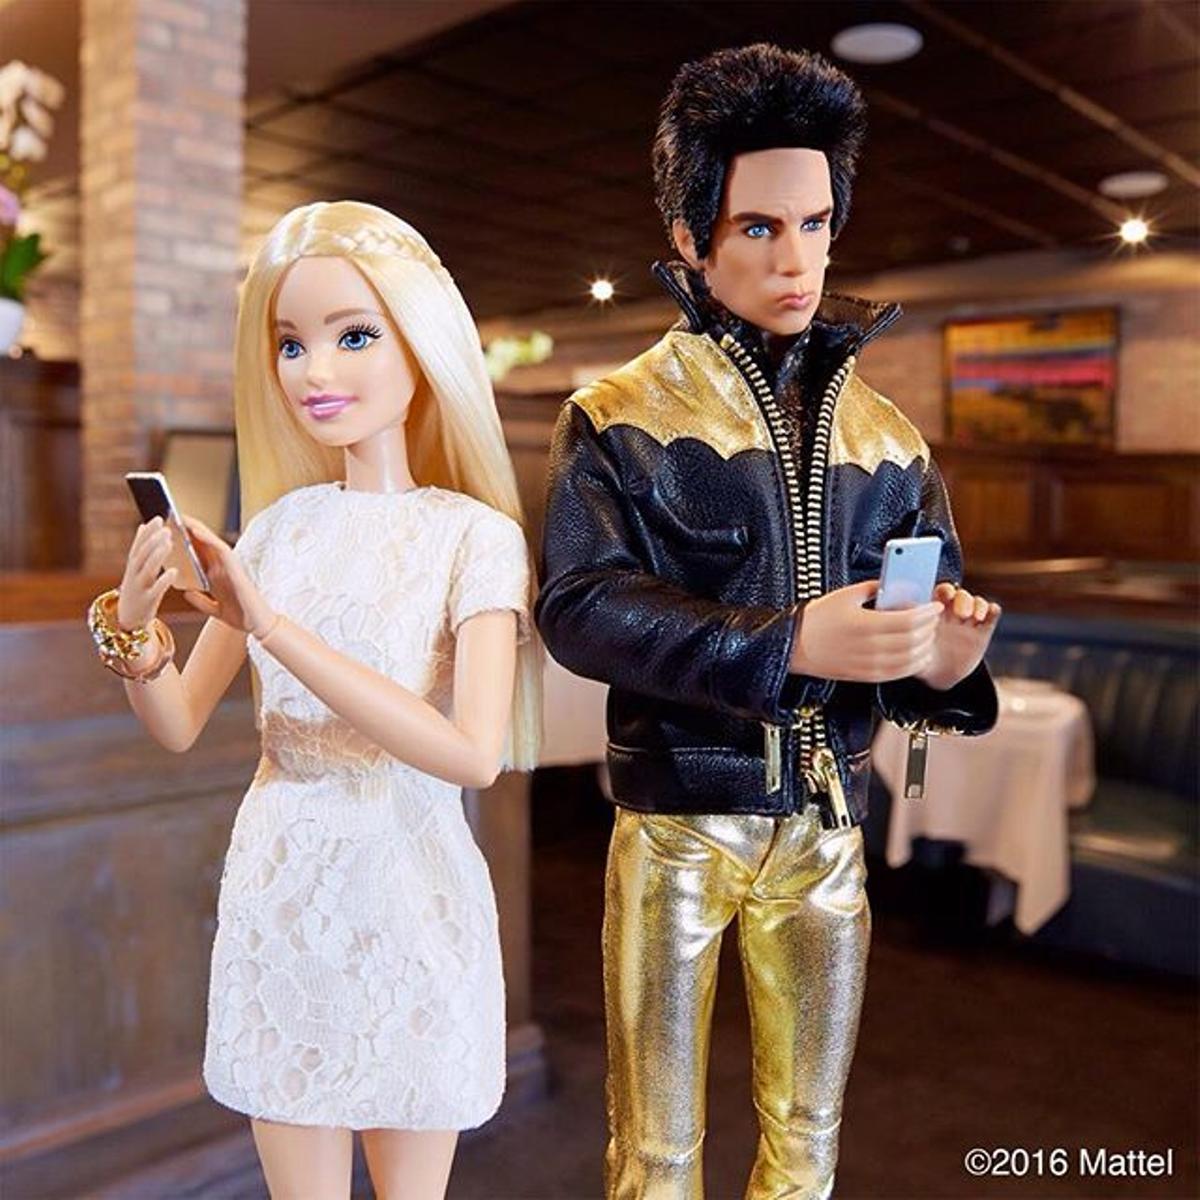 Ben Stiller parece haberse convertido en el mejor amigo de Barbie